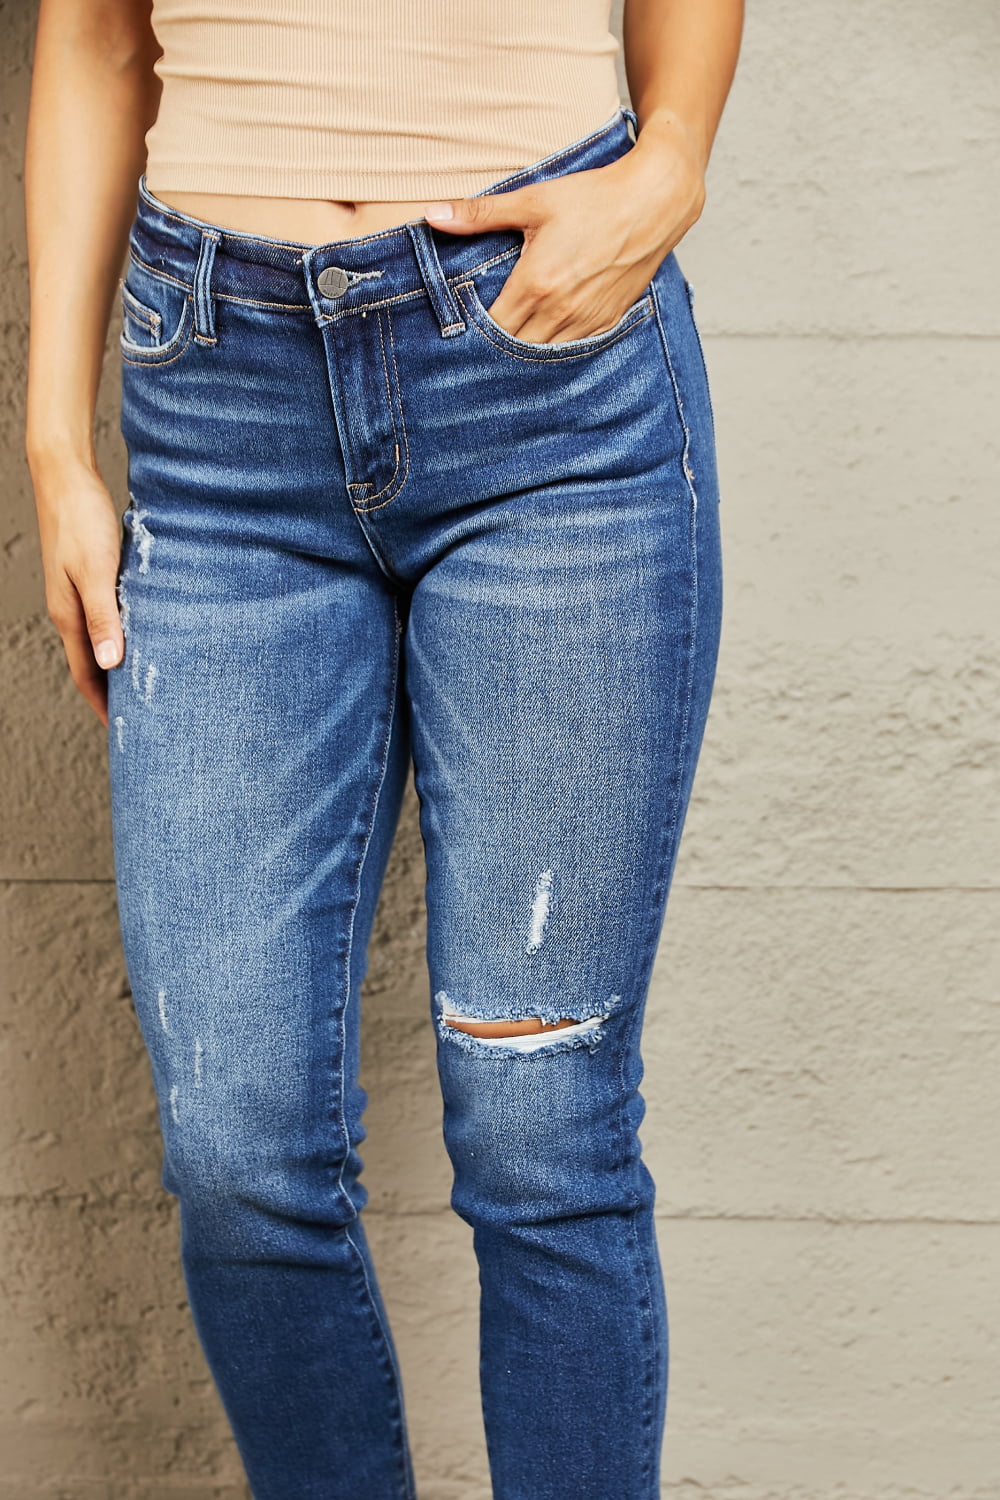 BAYEAS Mid Rise Distressed Slim Jeans | us.meeeshop